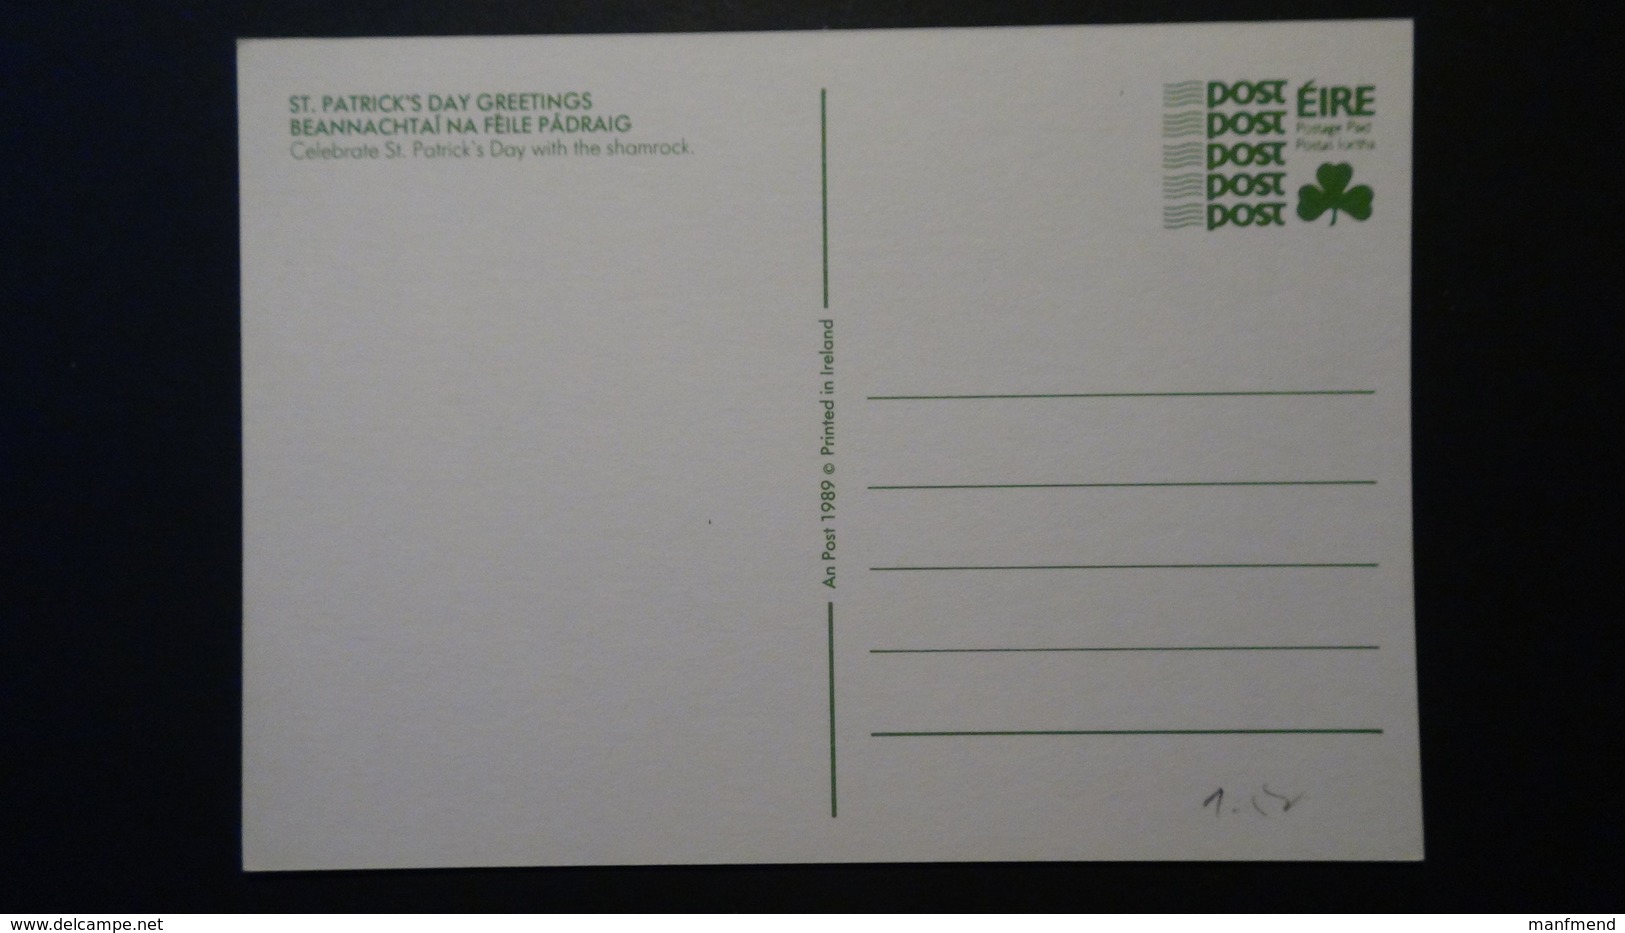 Irland - 1989 - Mi: P 34/01* - Postal Stationery - Look Scan - Ganzsachen